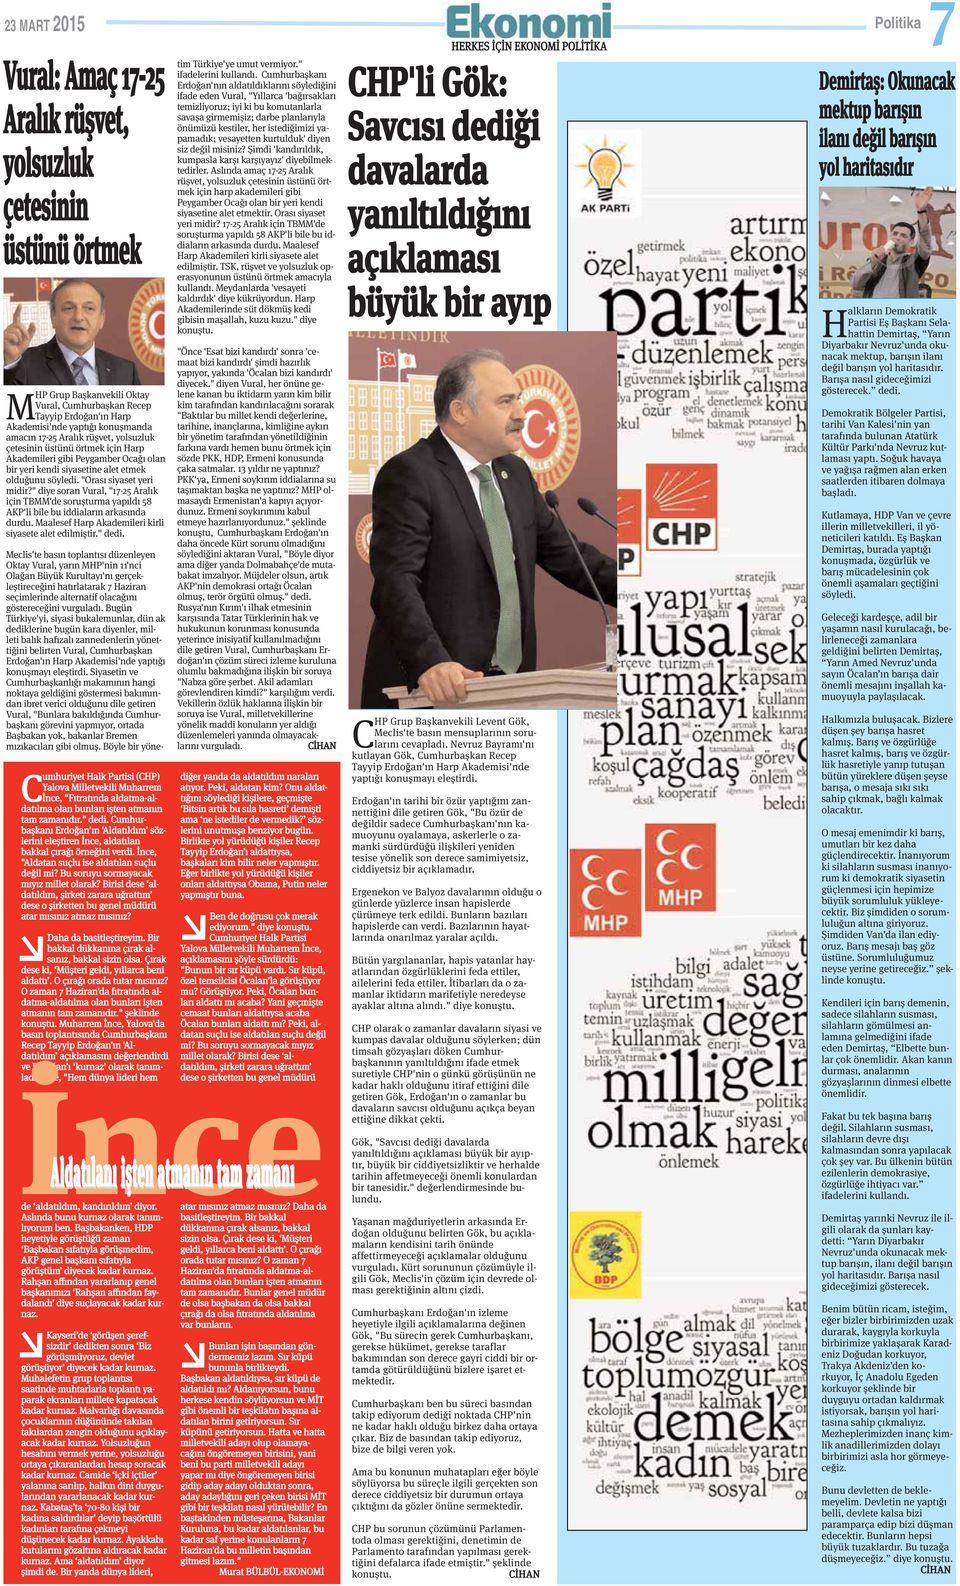 "Orası siyaset yeri midir?" diye soran Vural, "17-25 Aralık için TBMM'de soruşturma yapıldı 58 AKP'li bile bu iddiaların arkasında durdu. Maalesef Harp Akademileri kirli siyasete alet edilmiştir.